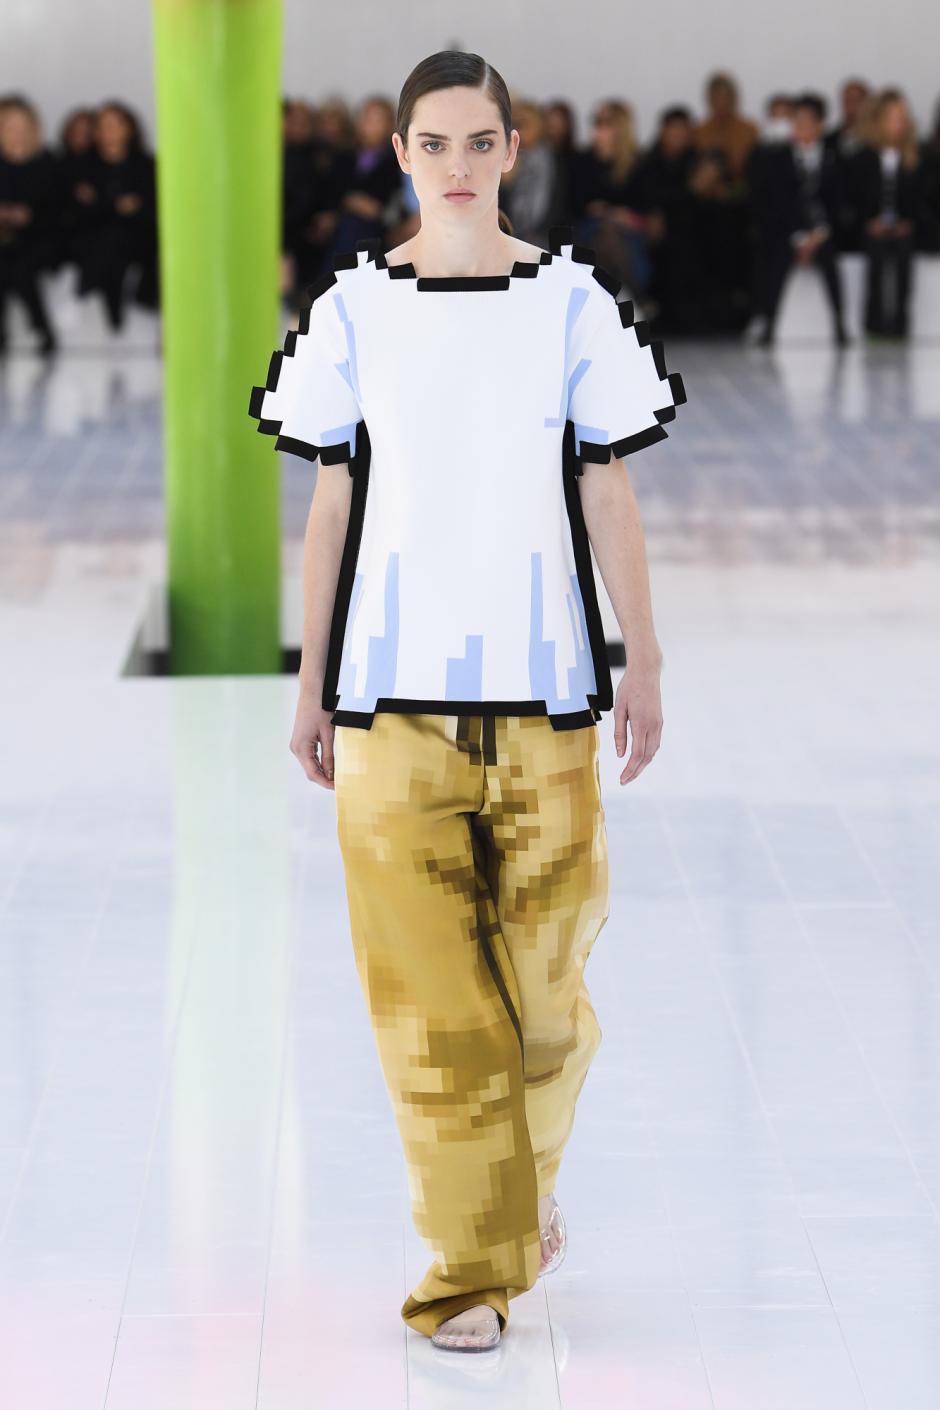 Una modelo luce la ropa que imita los pixeles presentada por Loewe en París